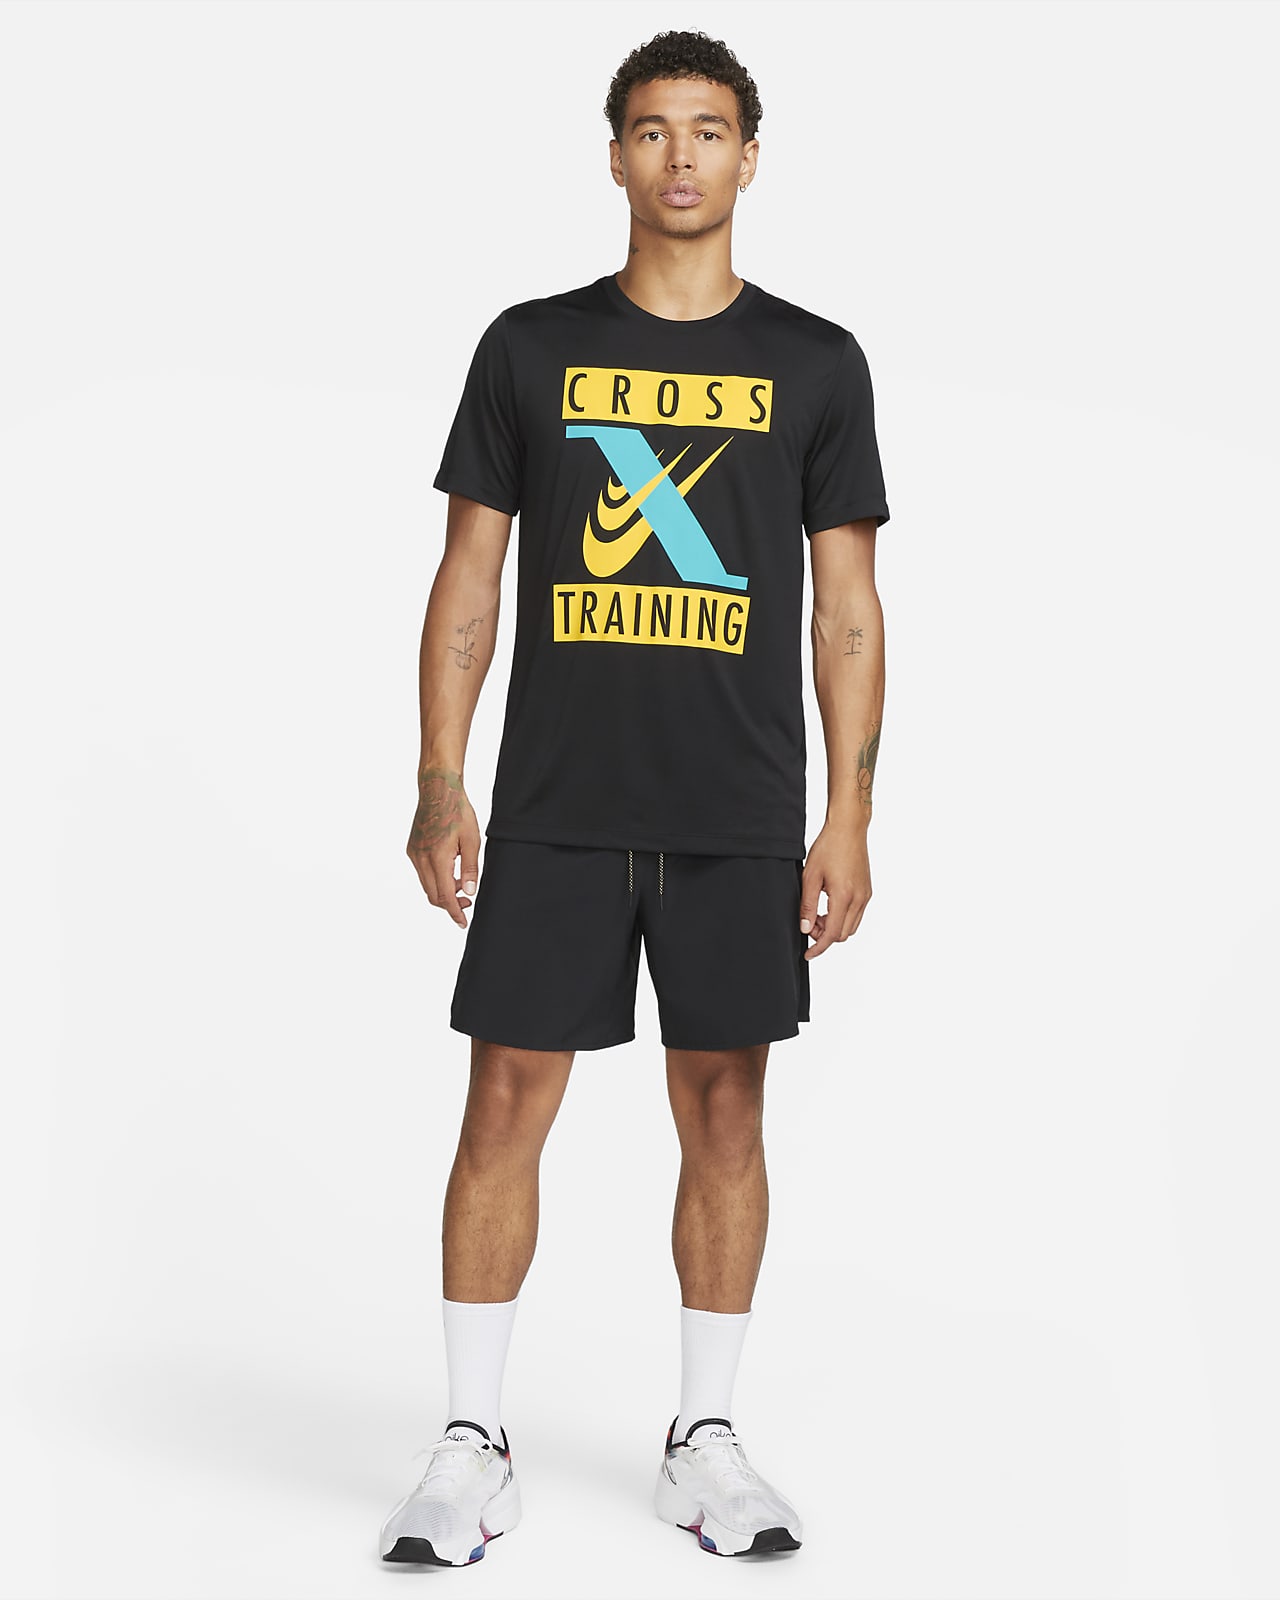 Le t-shirt Nike Legend